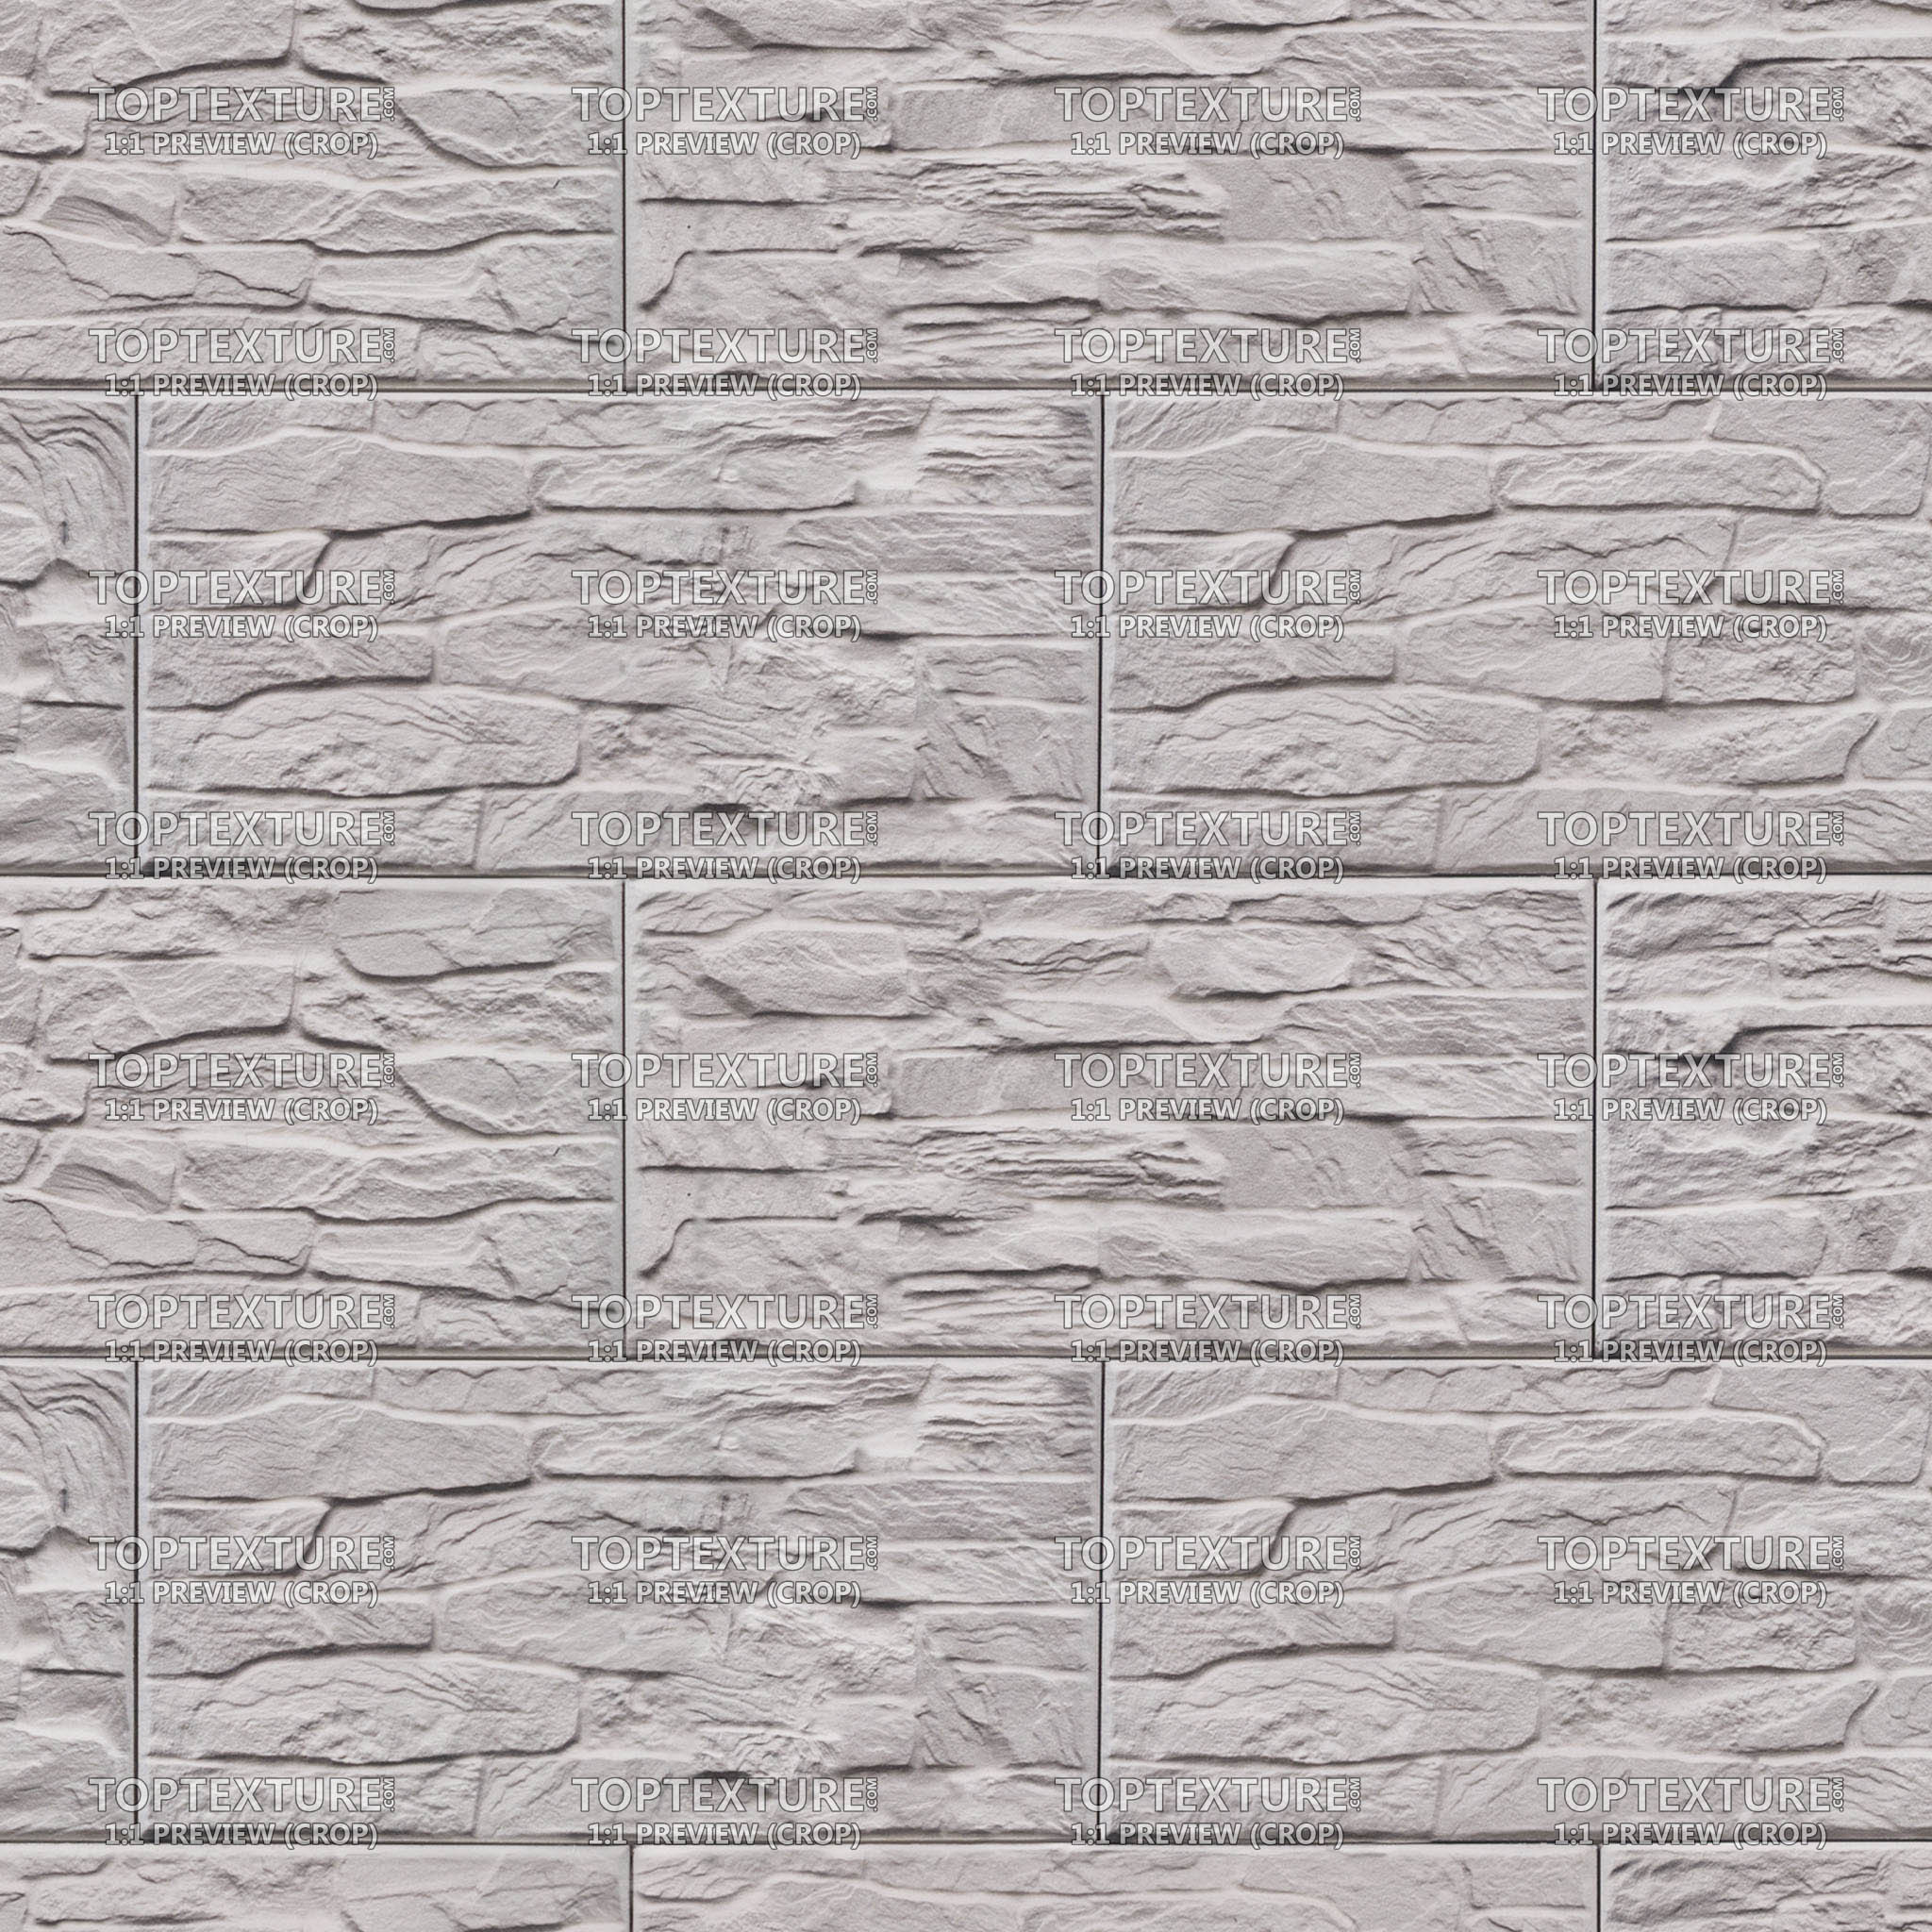 Grayish Patterned Rectangular Wall Tiles - Top Texture